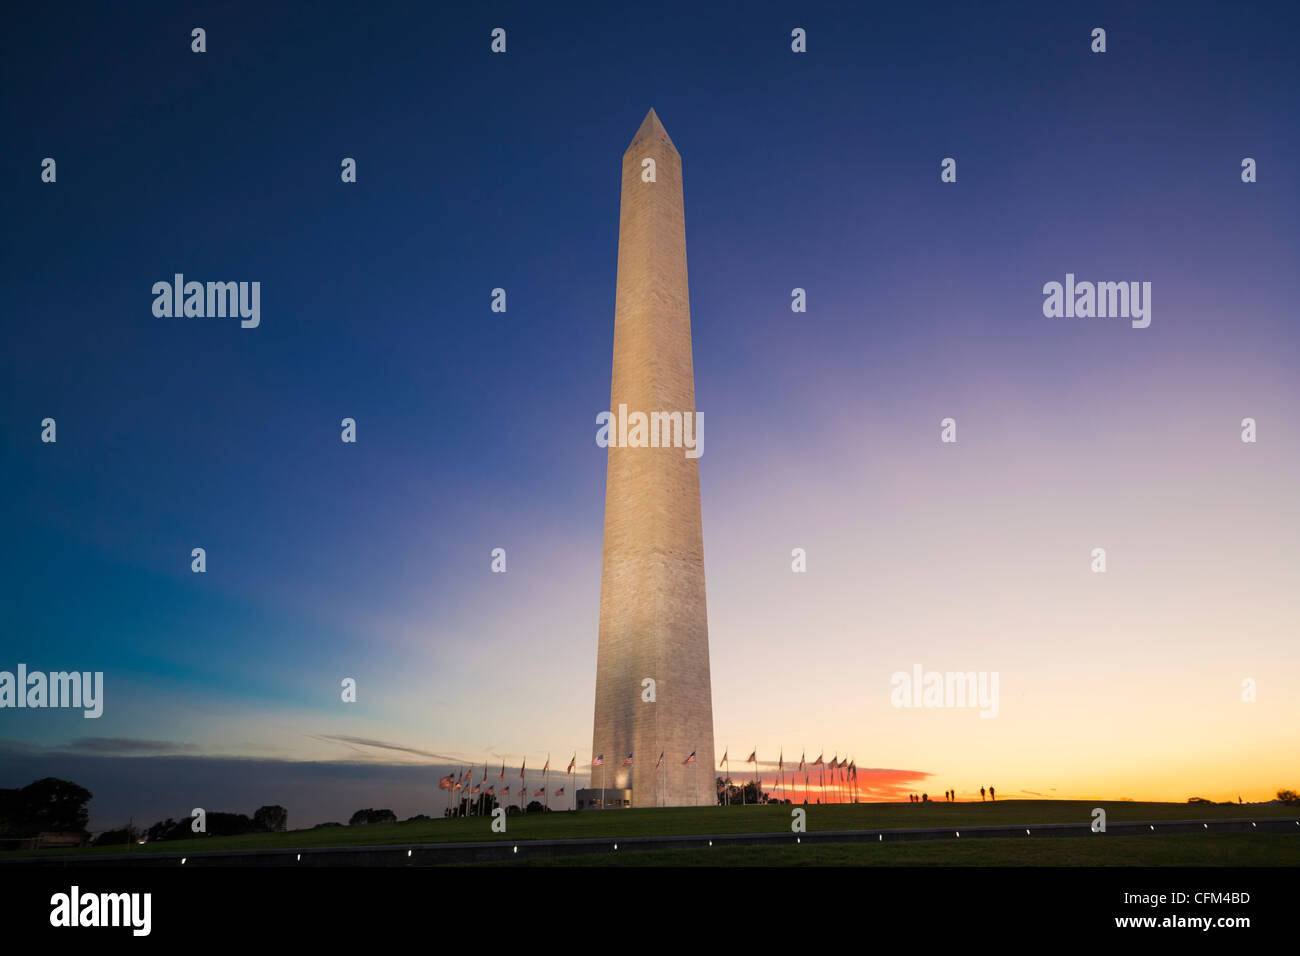 Washington D.C. Il Monumento a Washington al tramonto, crepuscolo con cieli colorati Foto Stock